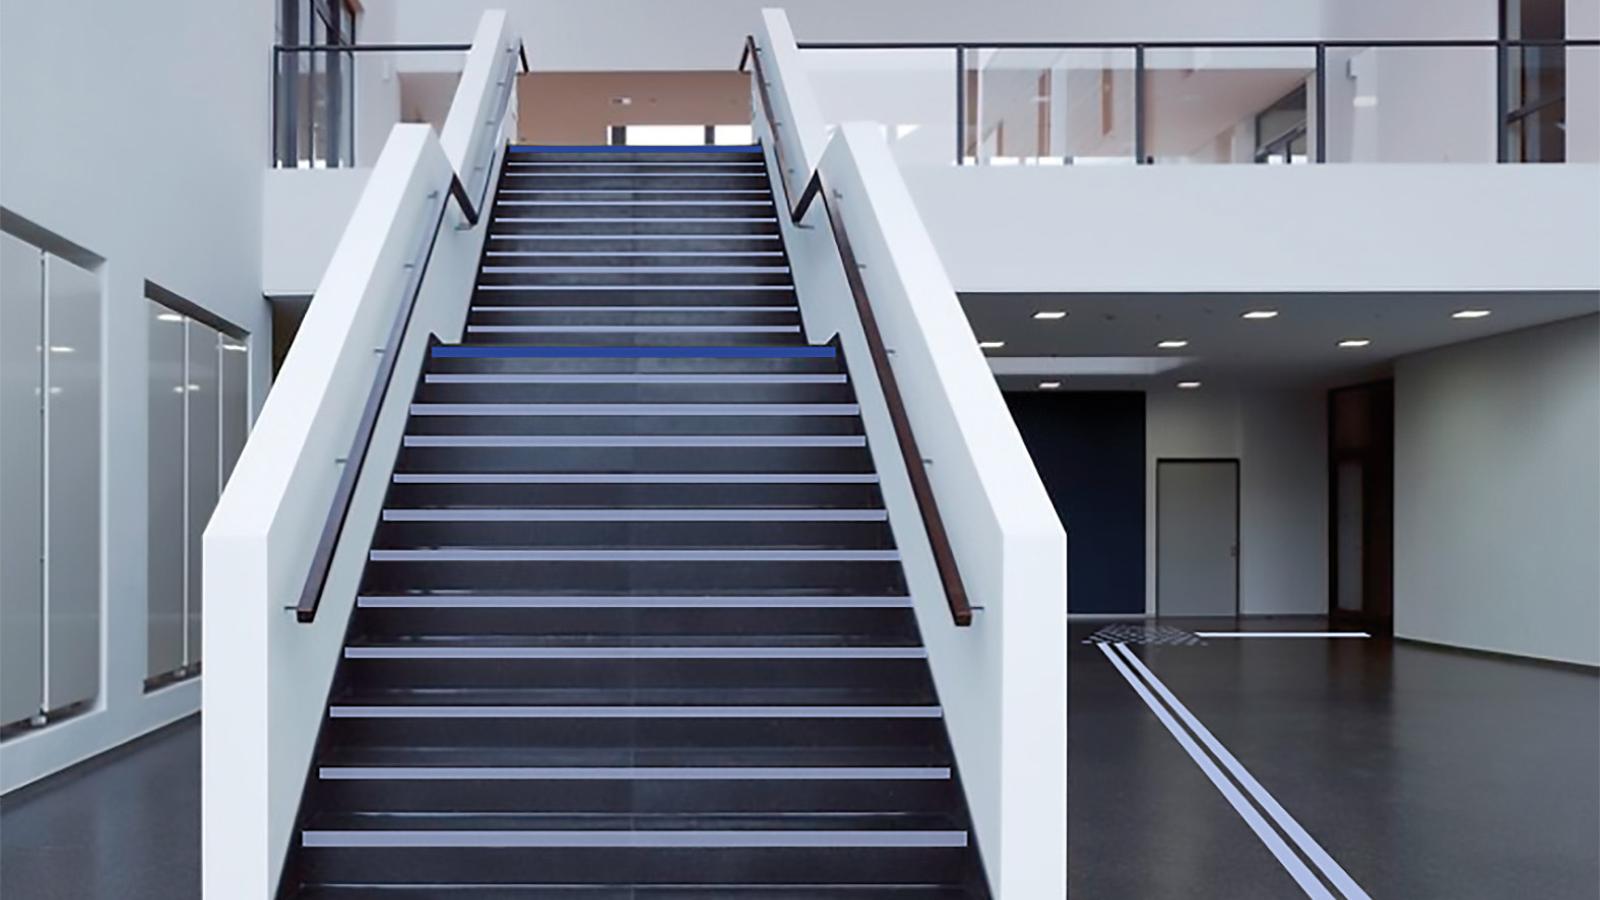 Foyer des Hauptgebäudes mit Treppe: Blindenleitstreifen führen von der Mensa zum Ein-/Ausgang. Vor der Treppe kleben Punkte auf dem Boden.